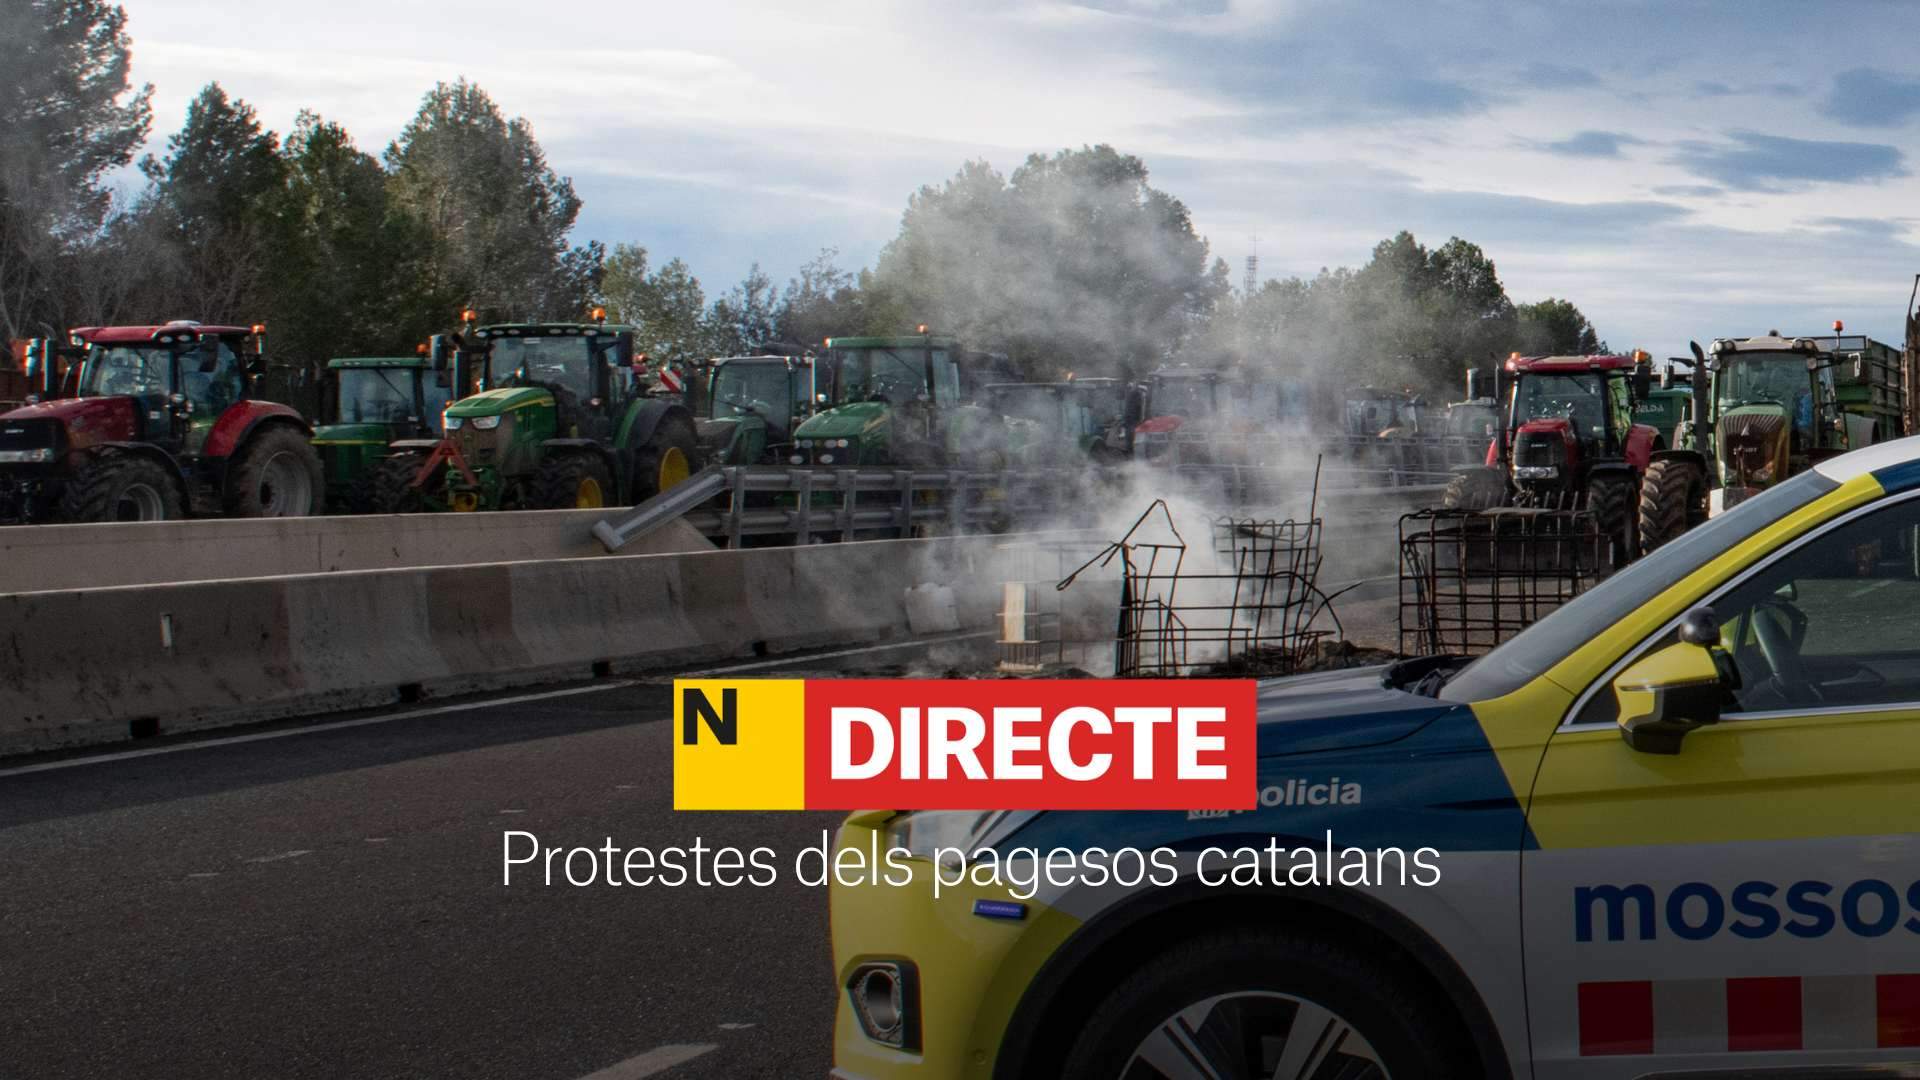 Protestas de agricultores en Catalunya, DIRECTO | Carreteras cortadas hoy, última hora